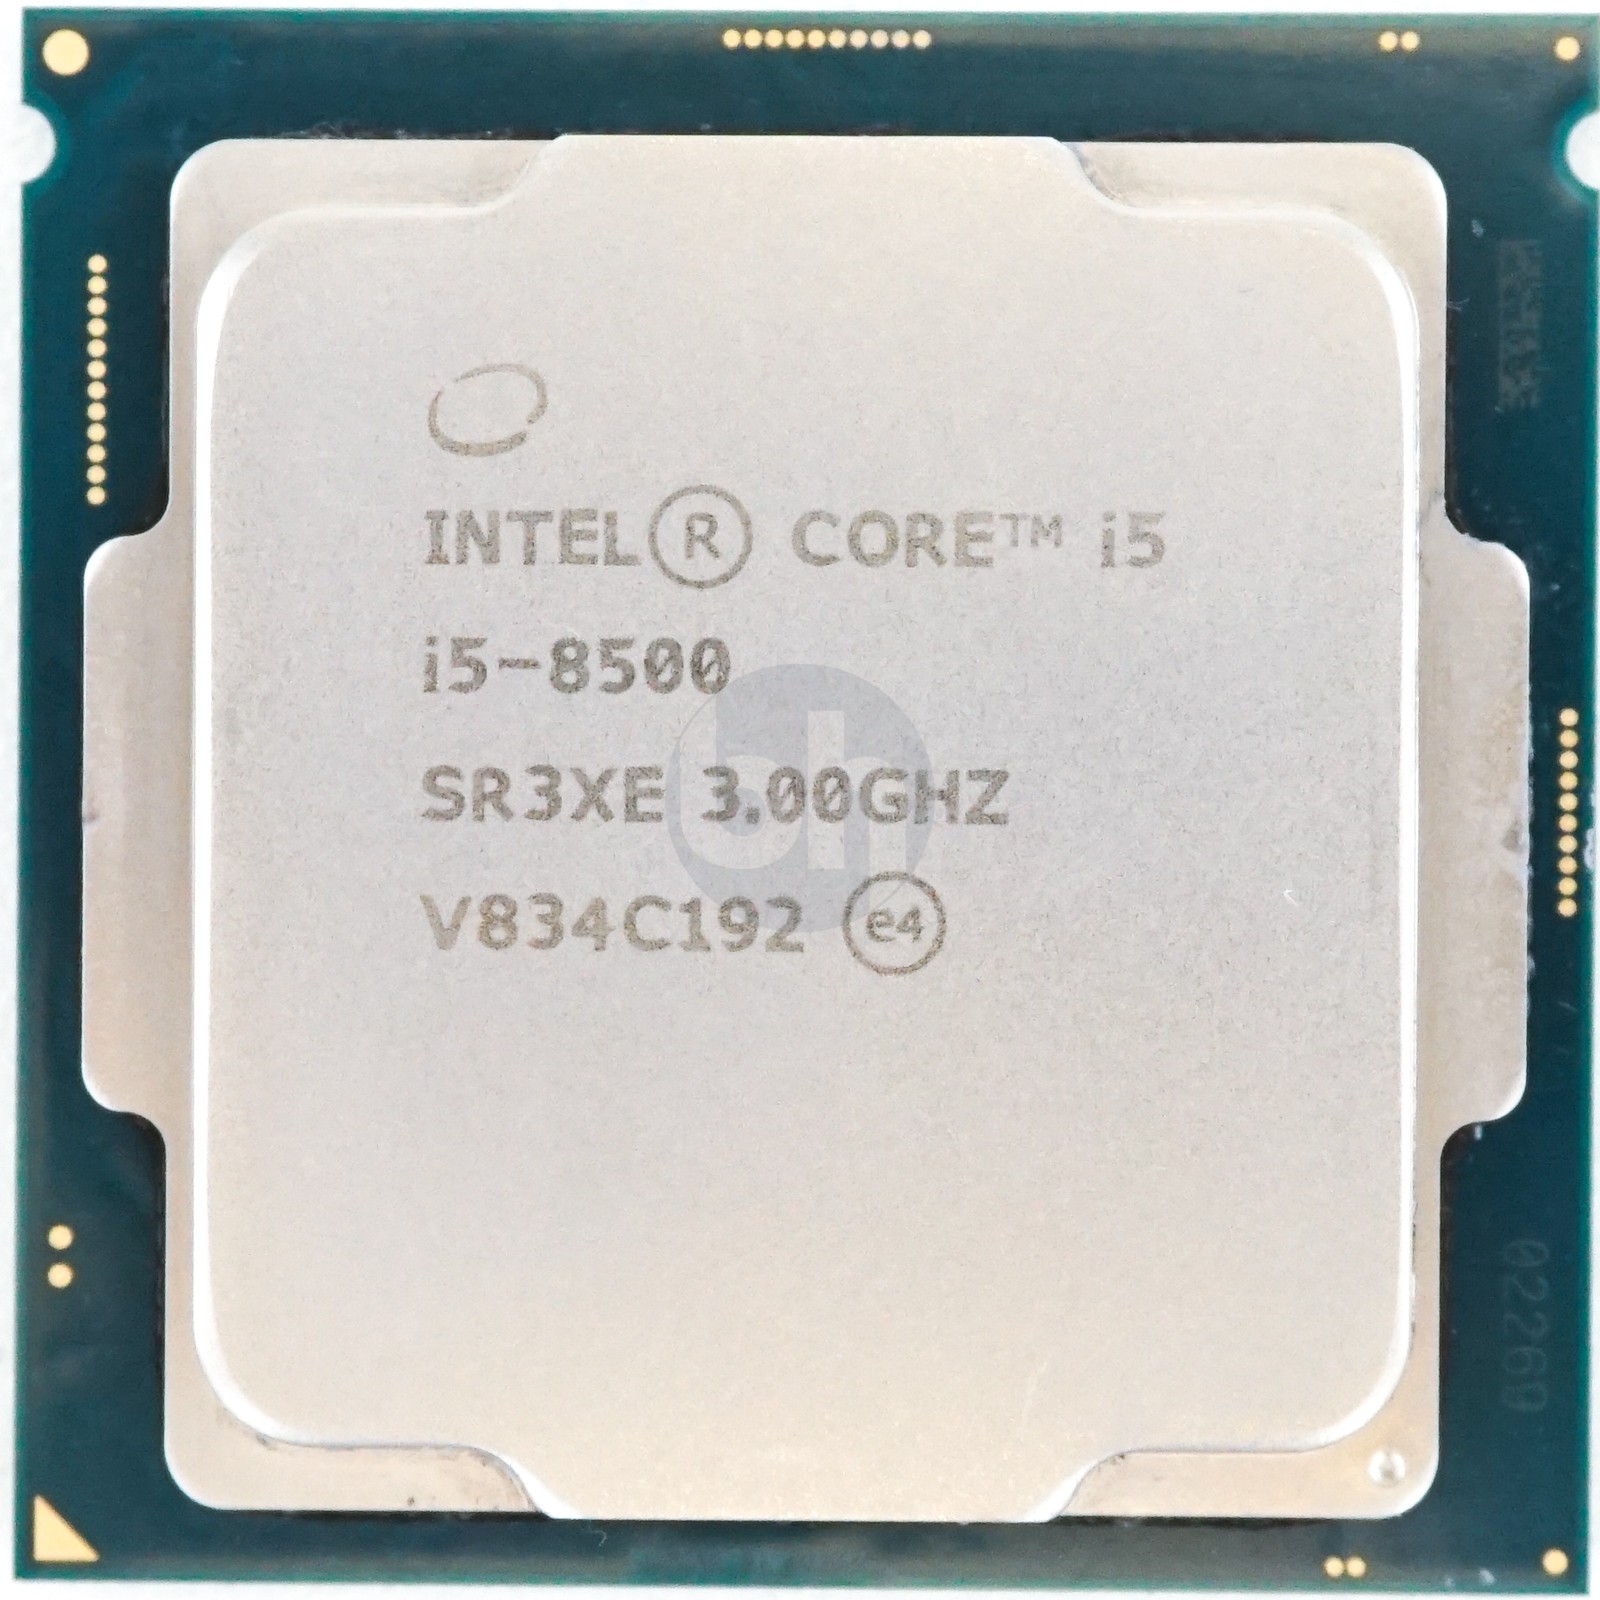 Intel core i5-8500 CPU - daterightstuff.com